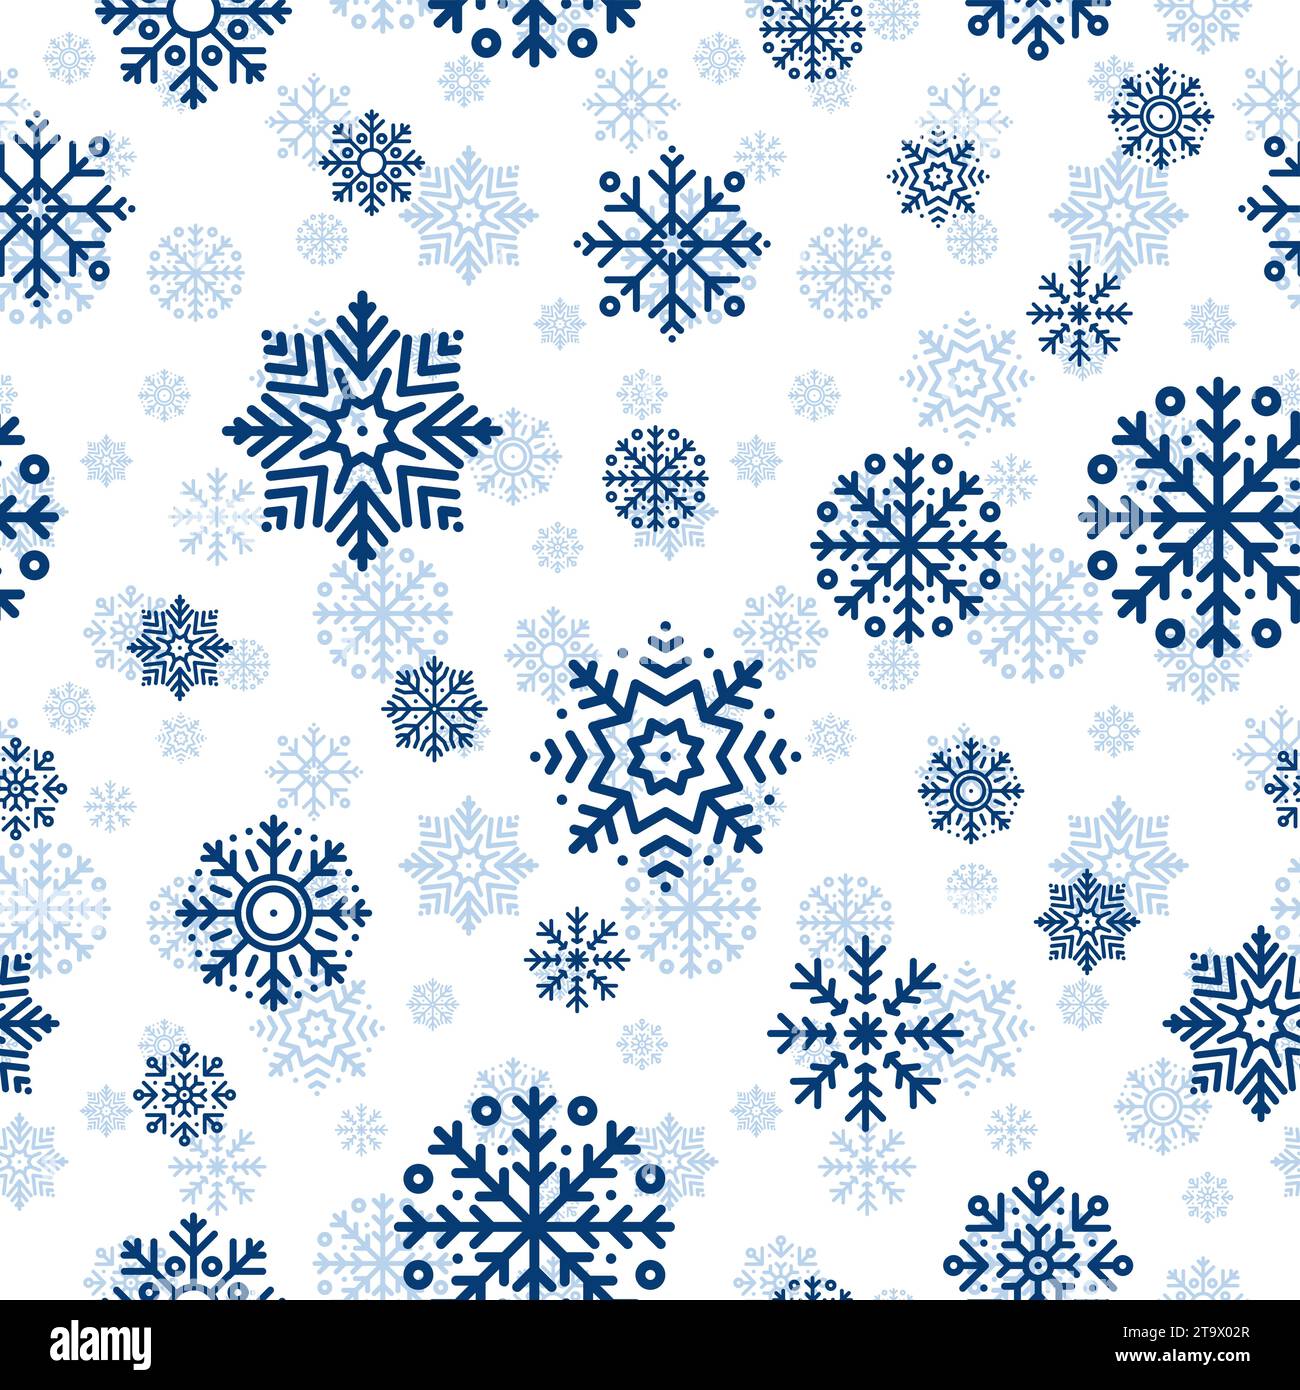 Nahtloses Weihnachtsmuster mit blauen Schneeflocken auf weißem Hintergrund. Winterdekoration. Frohes neues Jahr, kalter Schneefall. Vektorabbildung. Stock Vektor